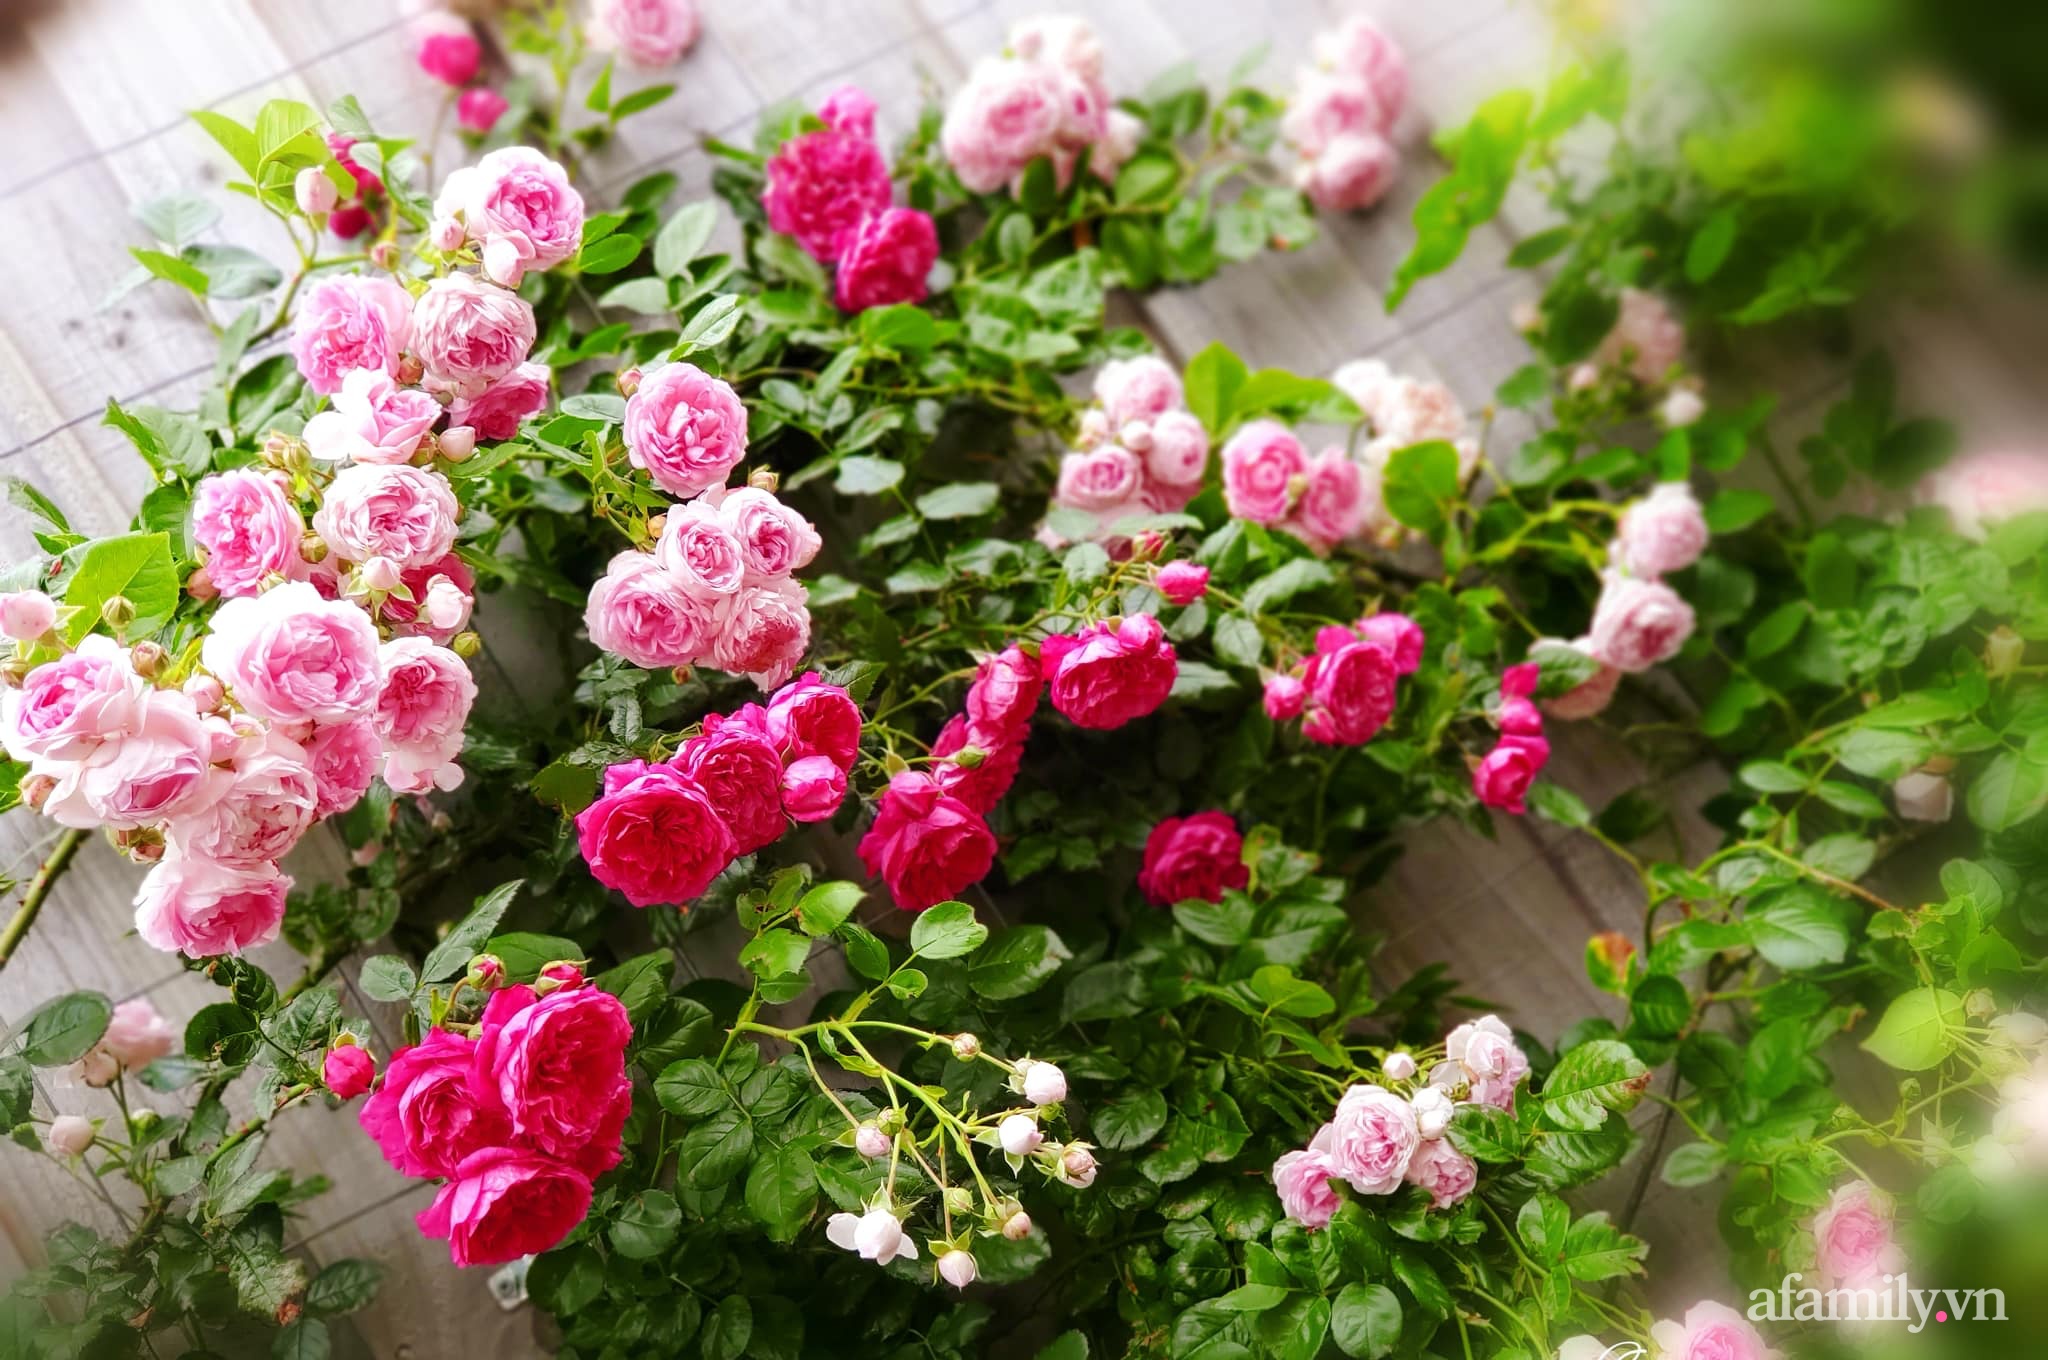 Vườn hồng 250m² ngát hương rực rỡ sắc màu đẹp như cổ tích của mẹ Việt ở Úc - Ảnh 27.